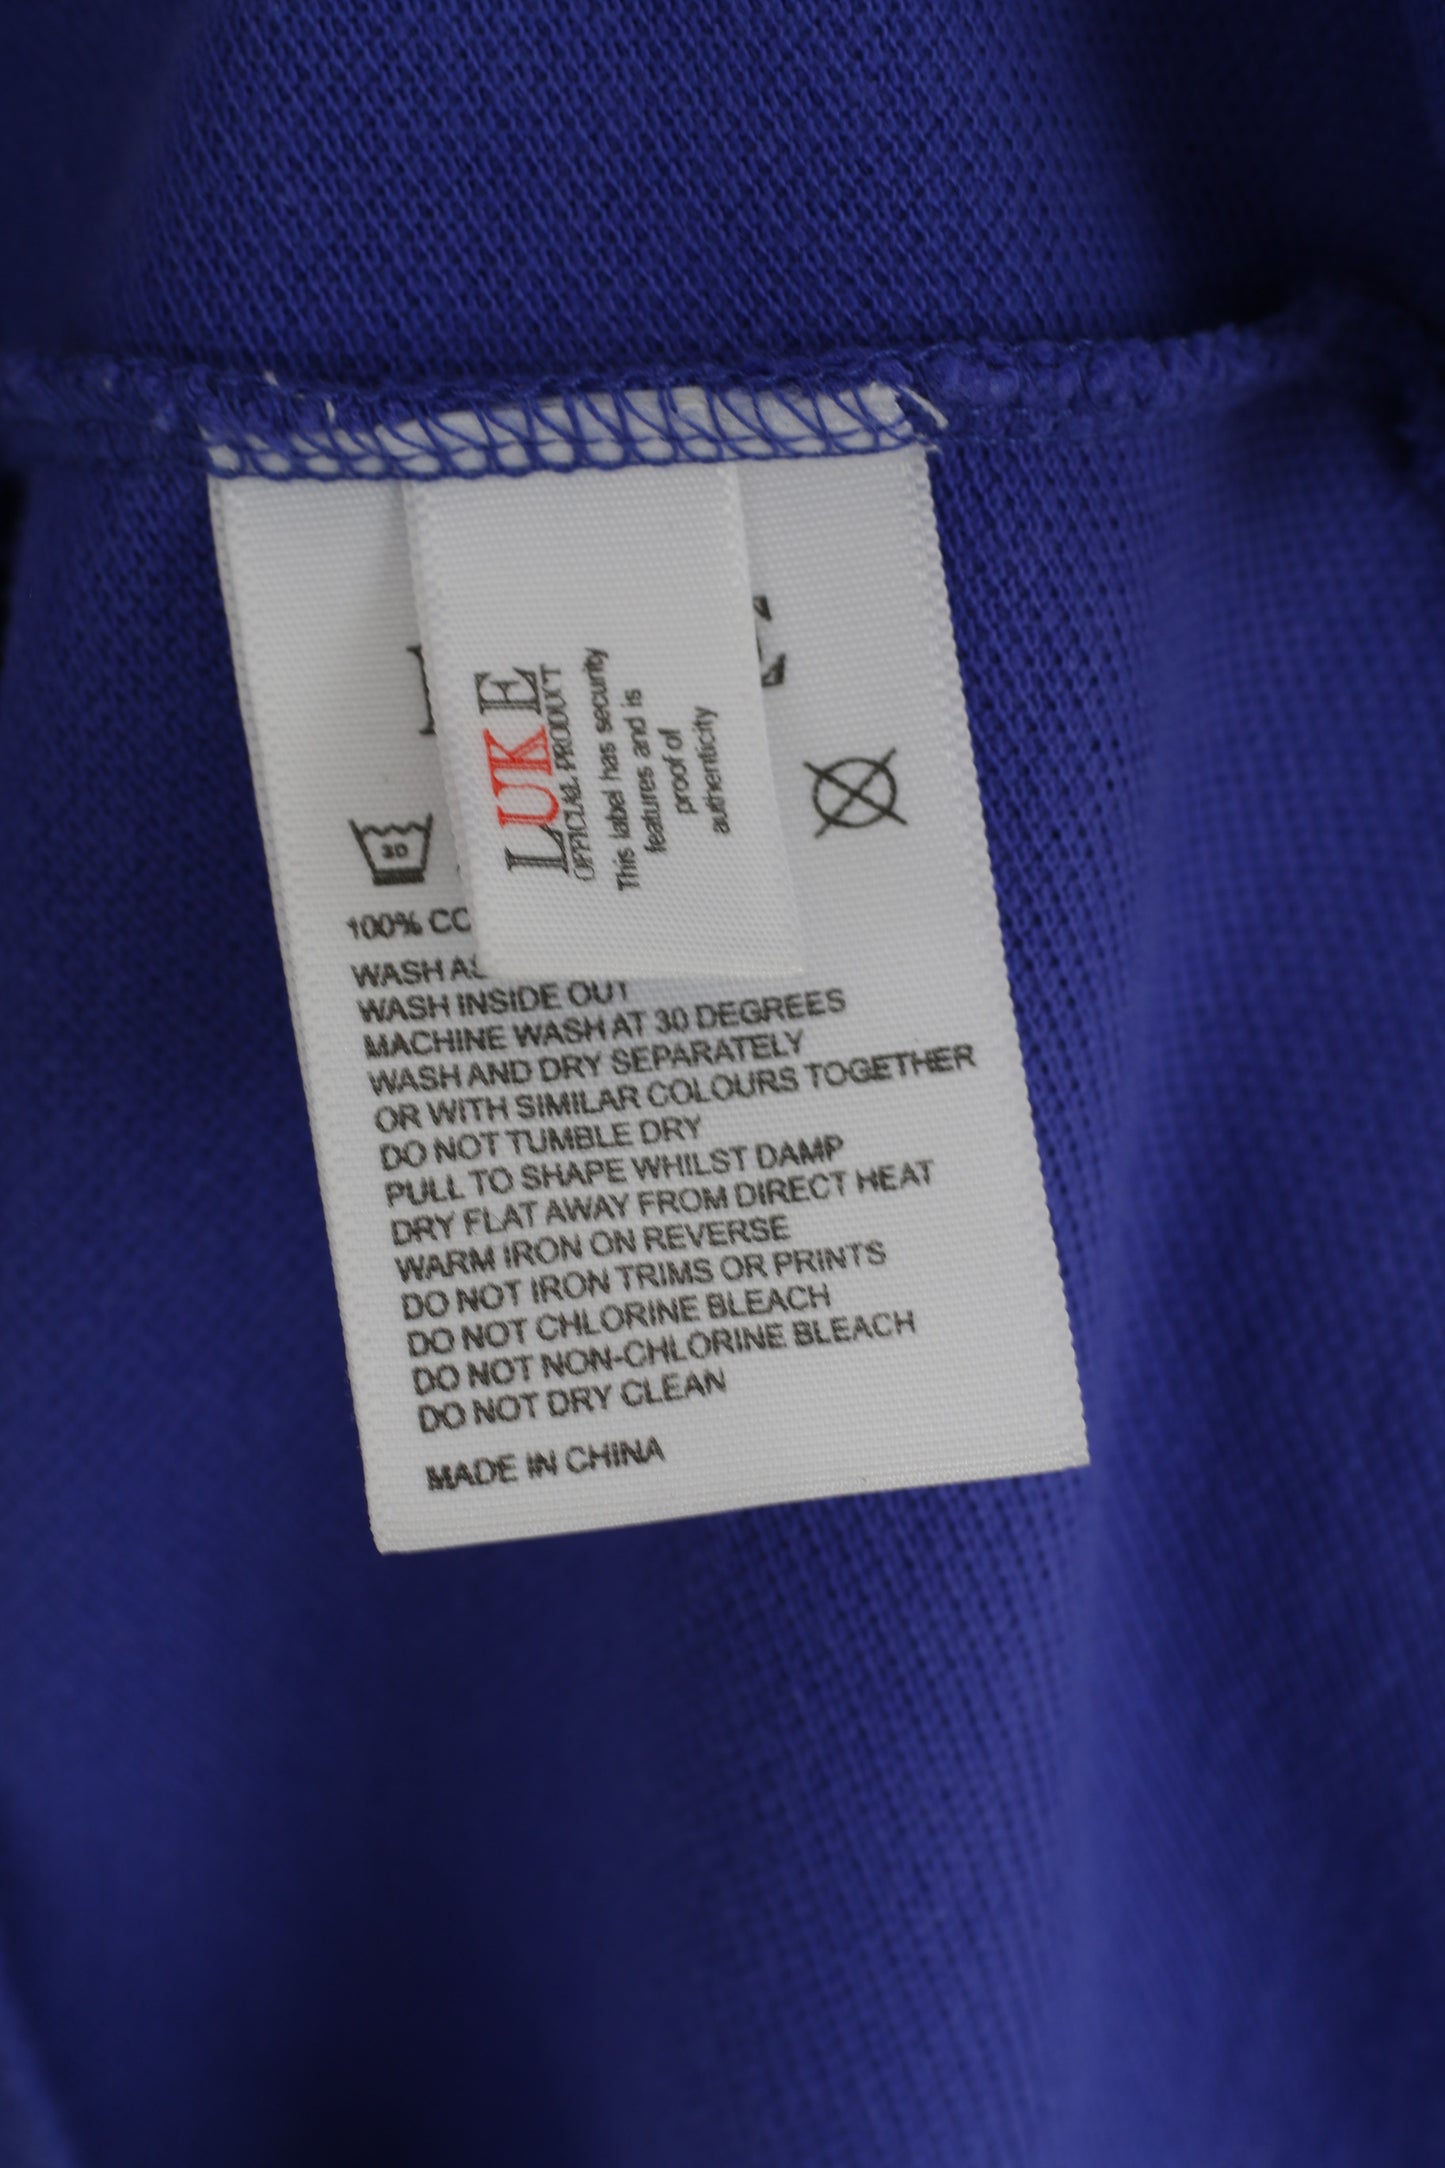 LUKE Men 2 M Polo Shirt Purple Cotton Dresslexic Resistant Classic Plain Top